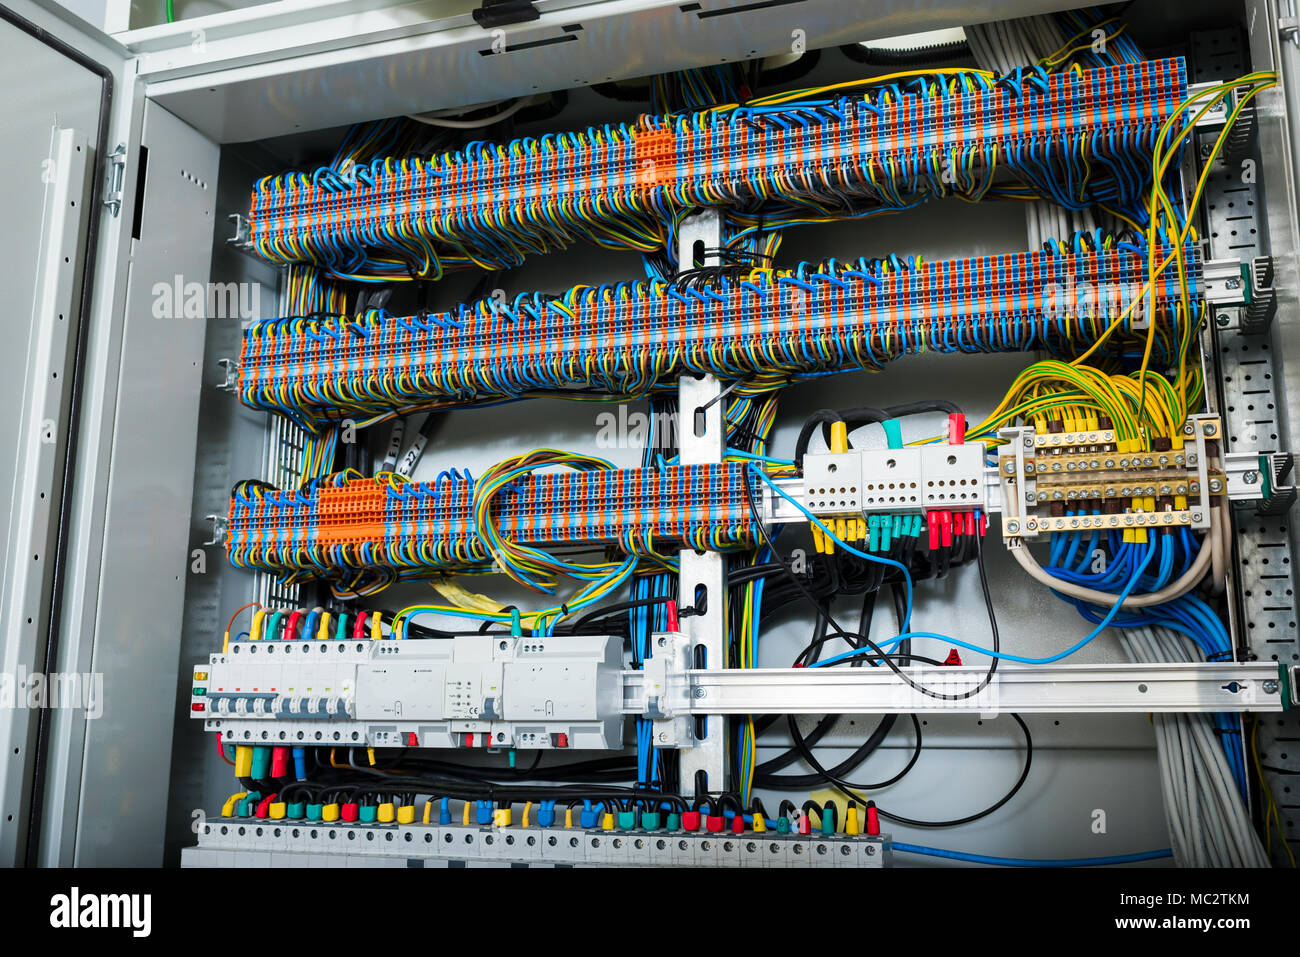 Die Kabel im Schaltschrank Stockfotografie - Alamy